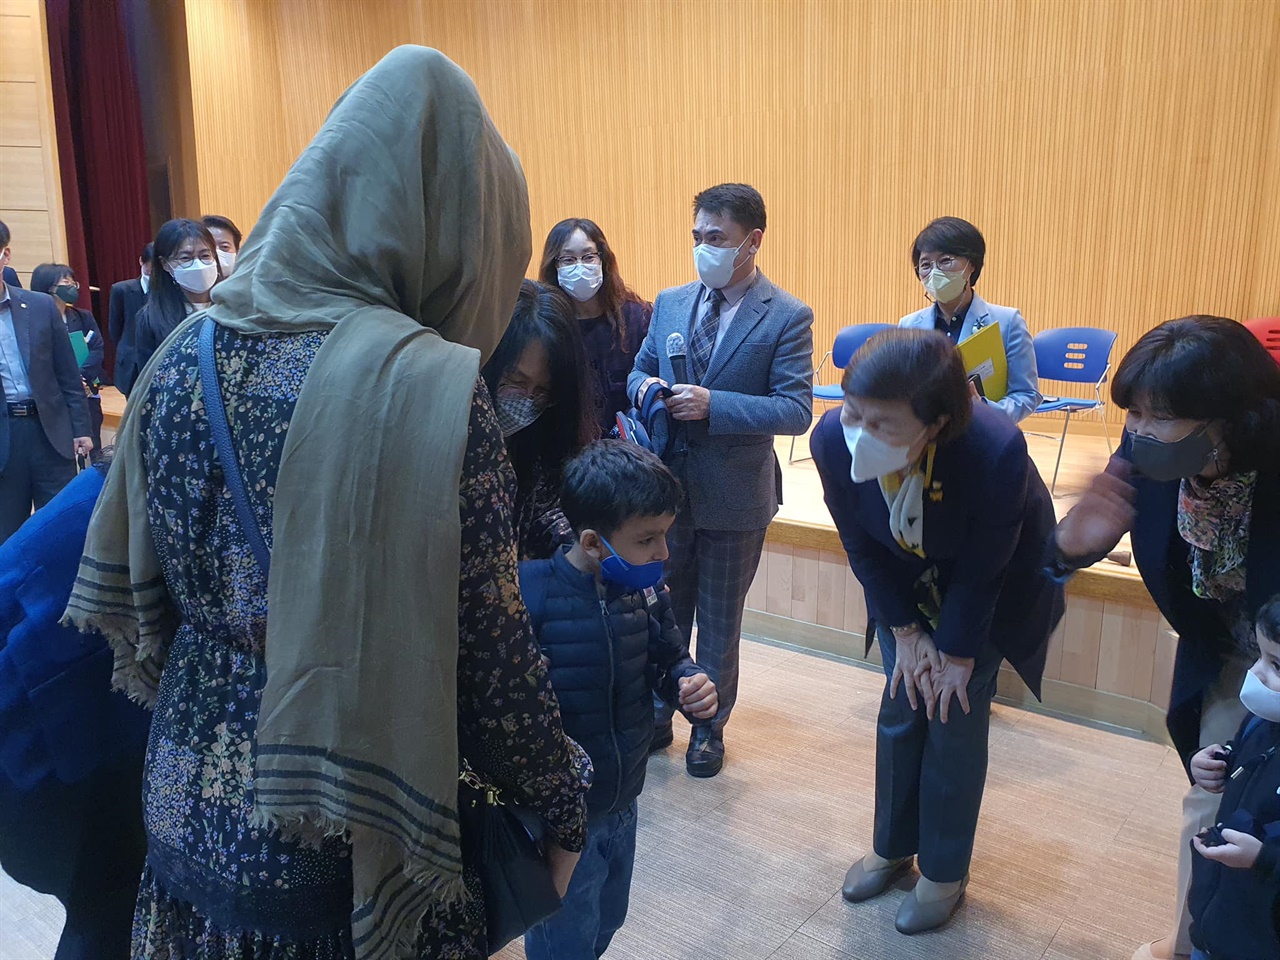 지난 16일 열린 아프가니스탄 학부모 설명회에서 노옥희 교육감이 한 학부모와 자녀에게 인사를 건네고 있다.